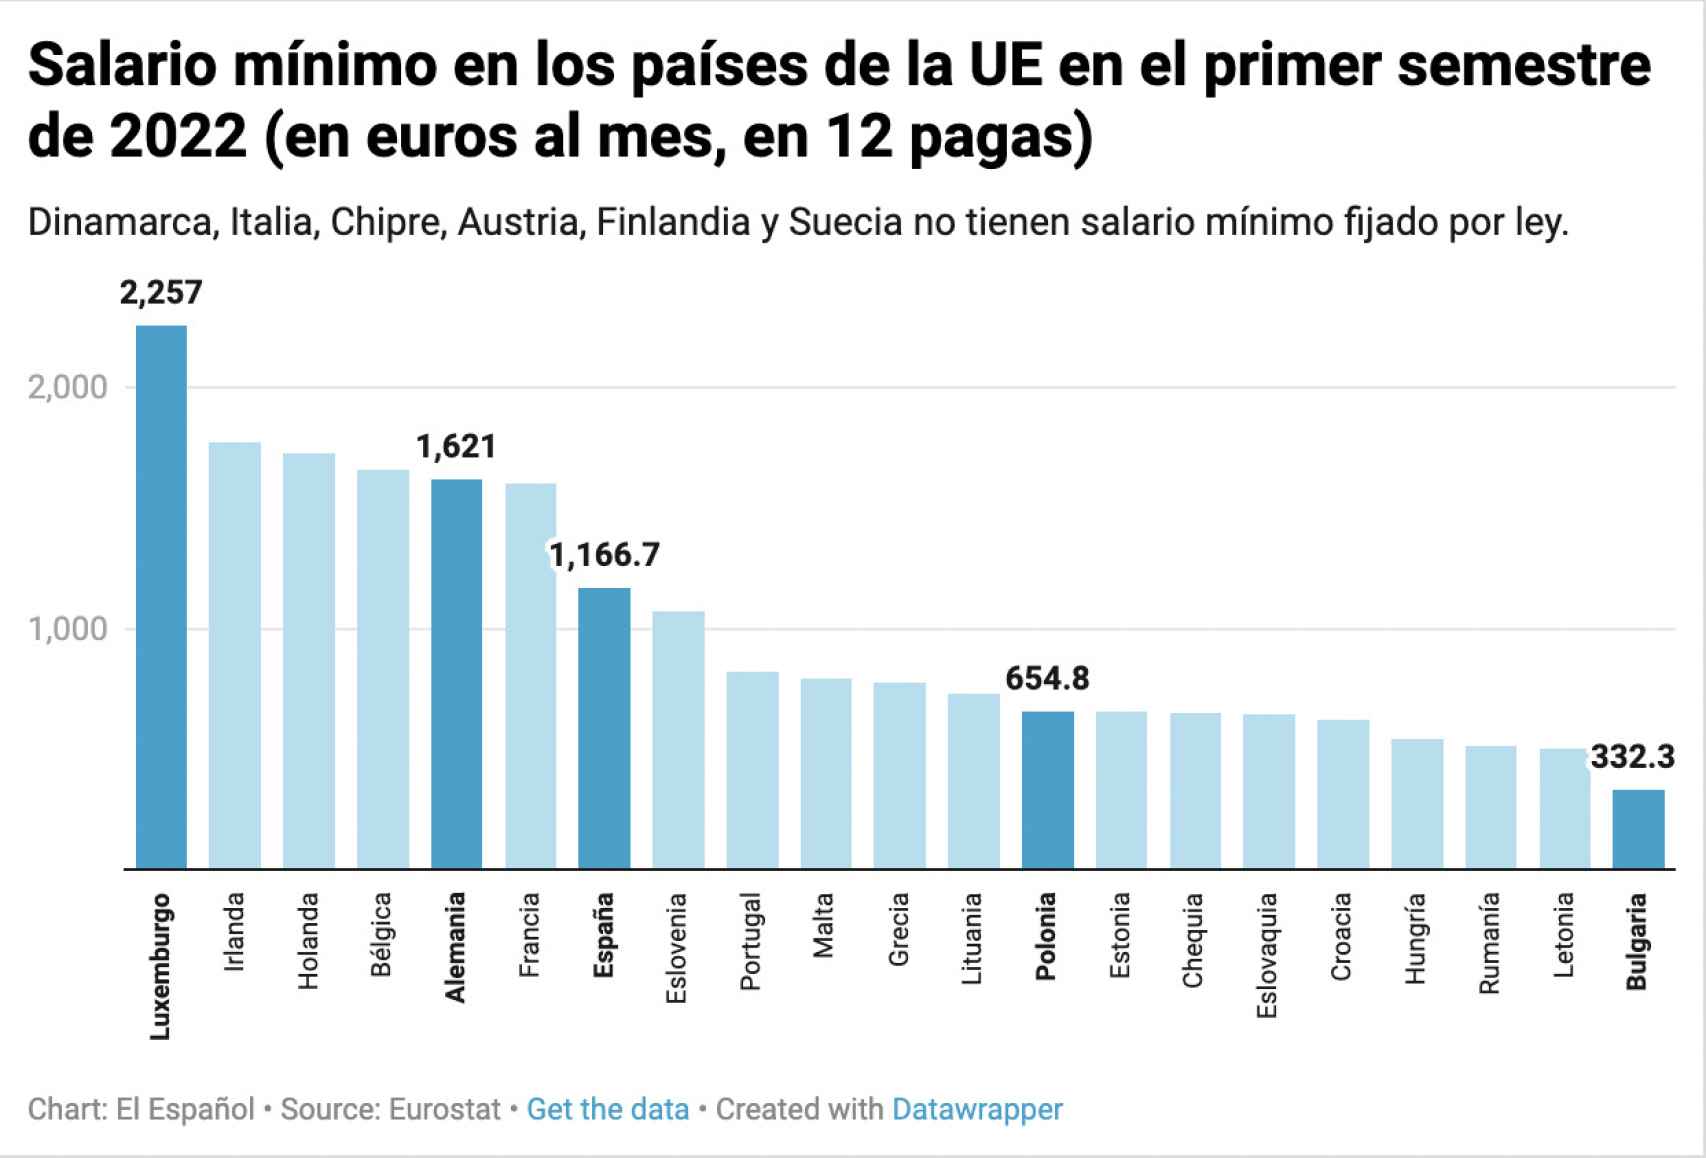 Salarios mínimos en los países de la Unión Europea